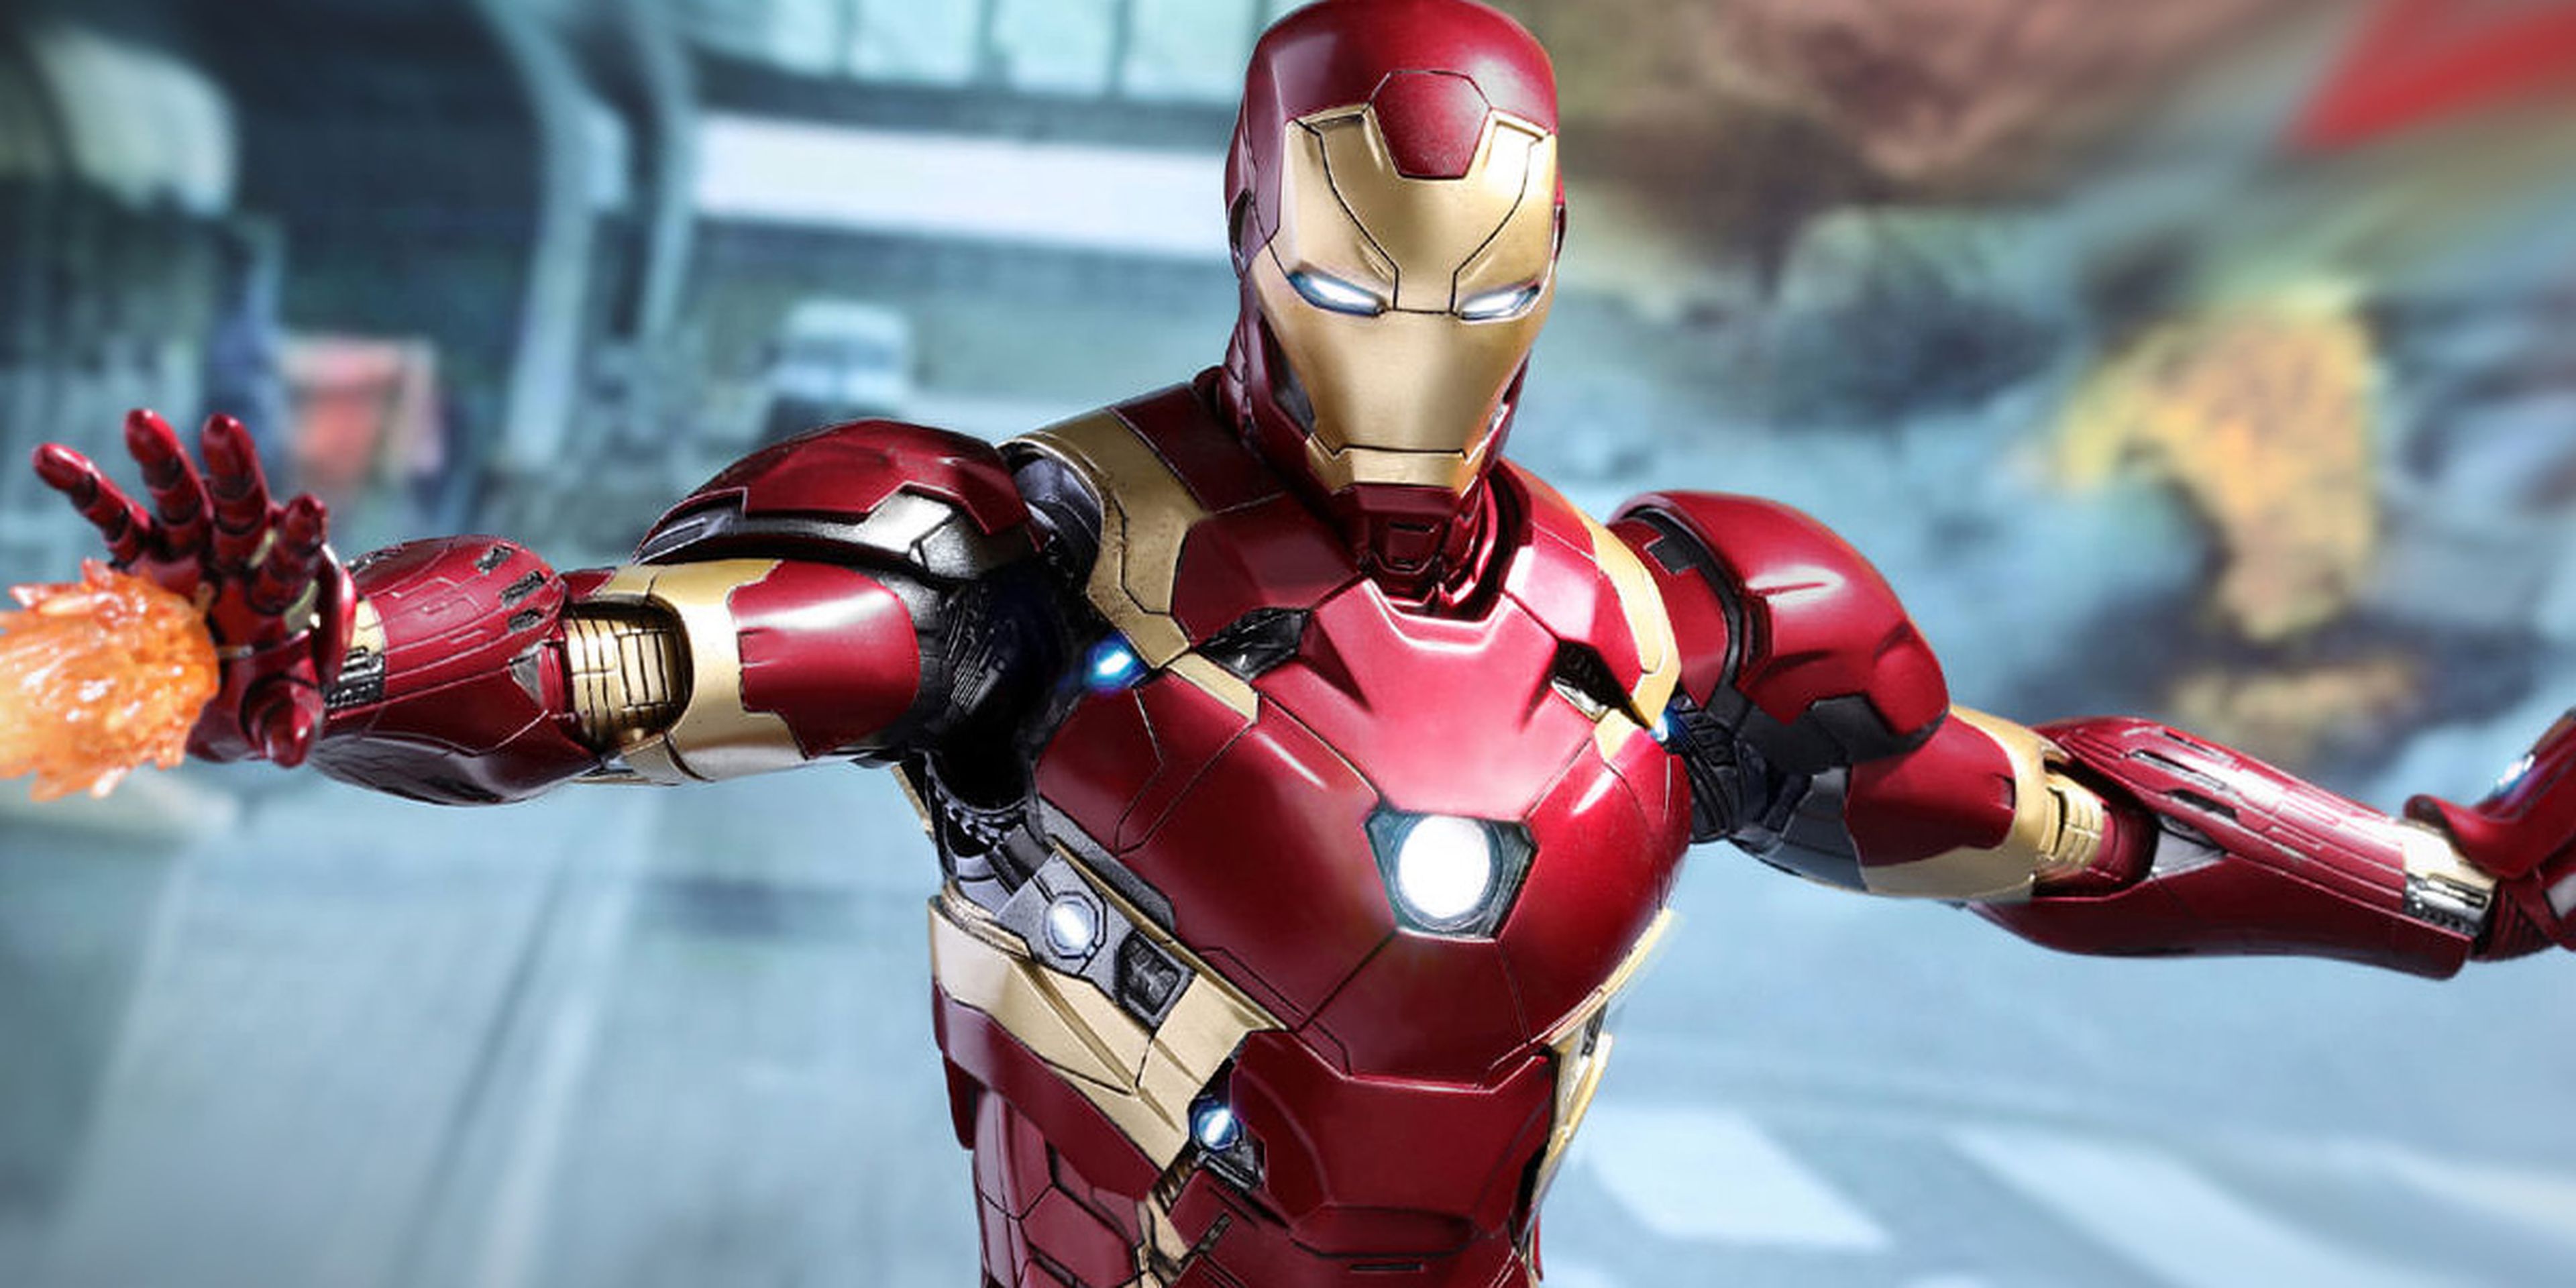 Sonrisa por favor confirmar Enajenar Las armaduras de Iron Man desde el principio hasta Vengadores Endgame |  Hobby Consolas